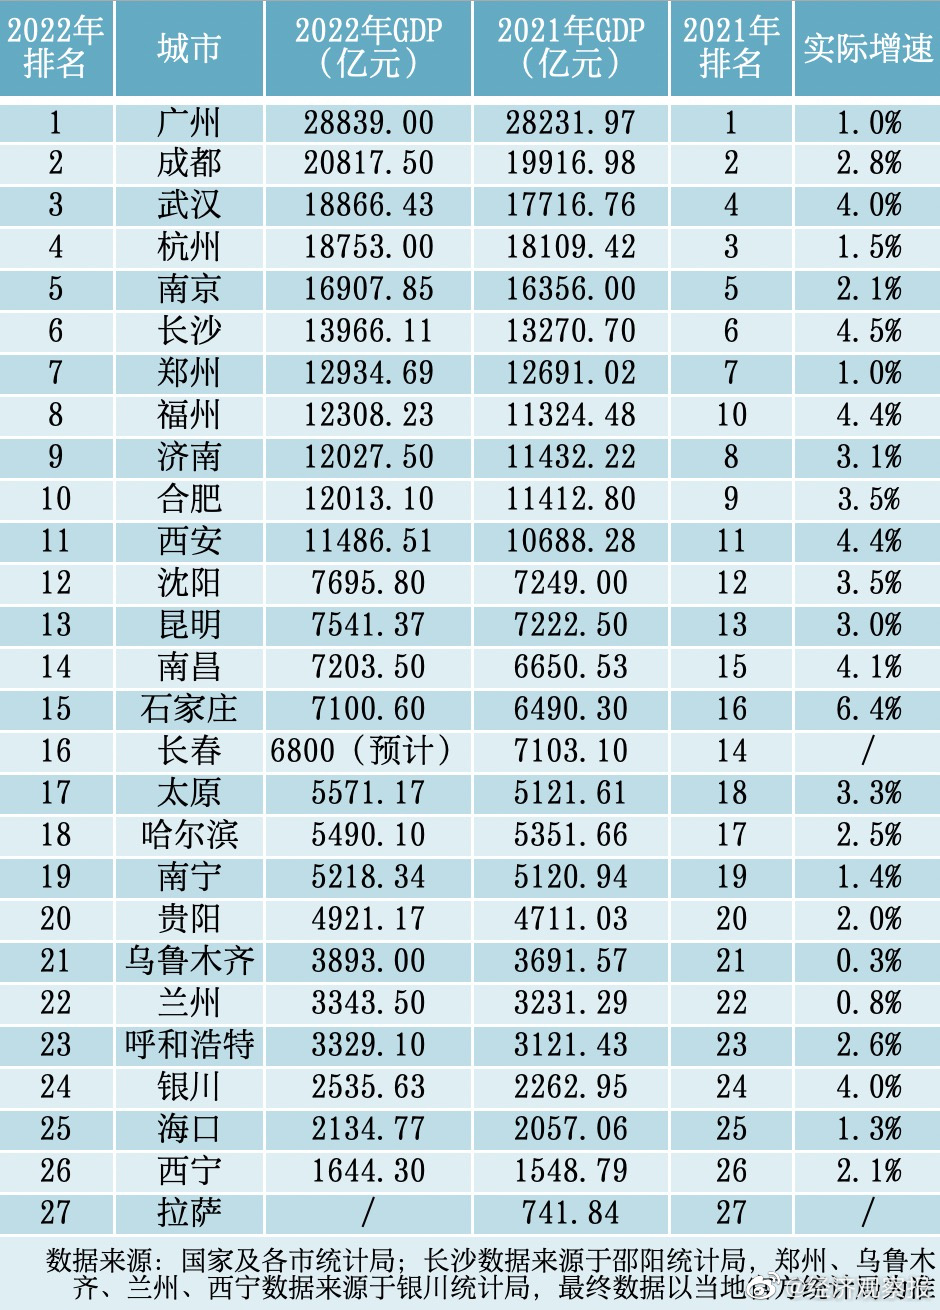 省会城市GDP十强出炉 武汉GDP超杭州排名前三